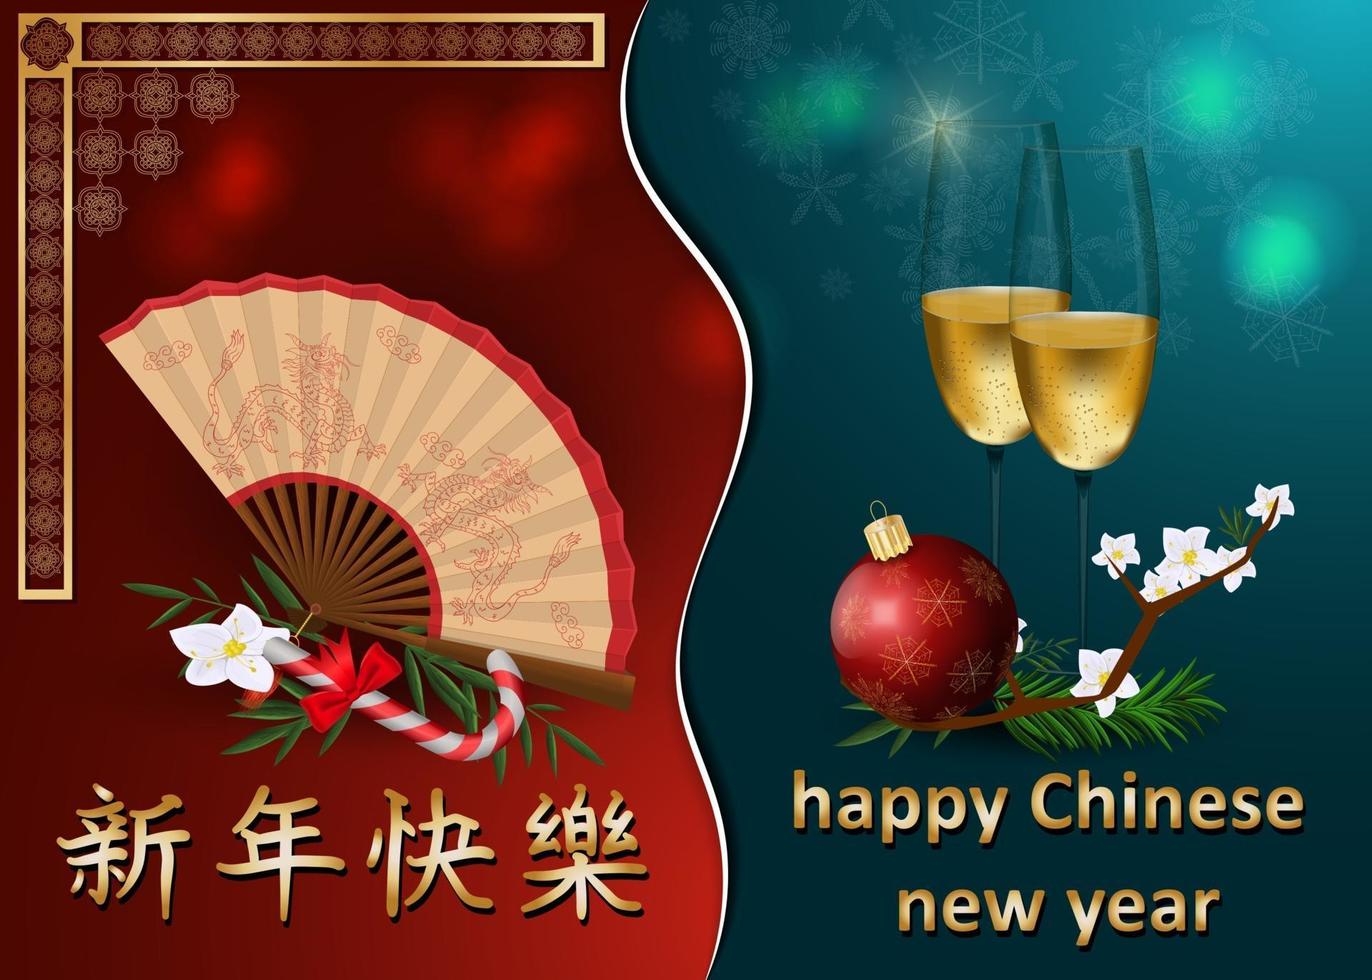 design de cartão de felicitações de ano novo chinês e europeu vetor